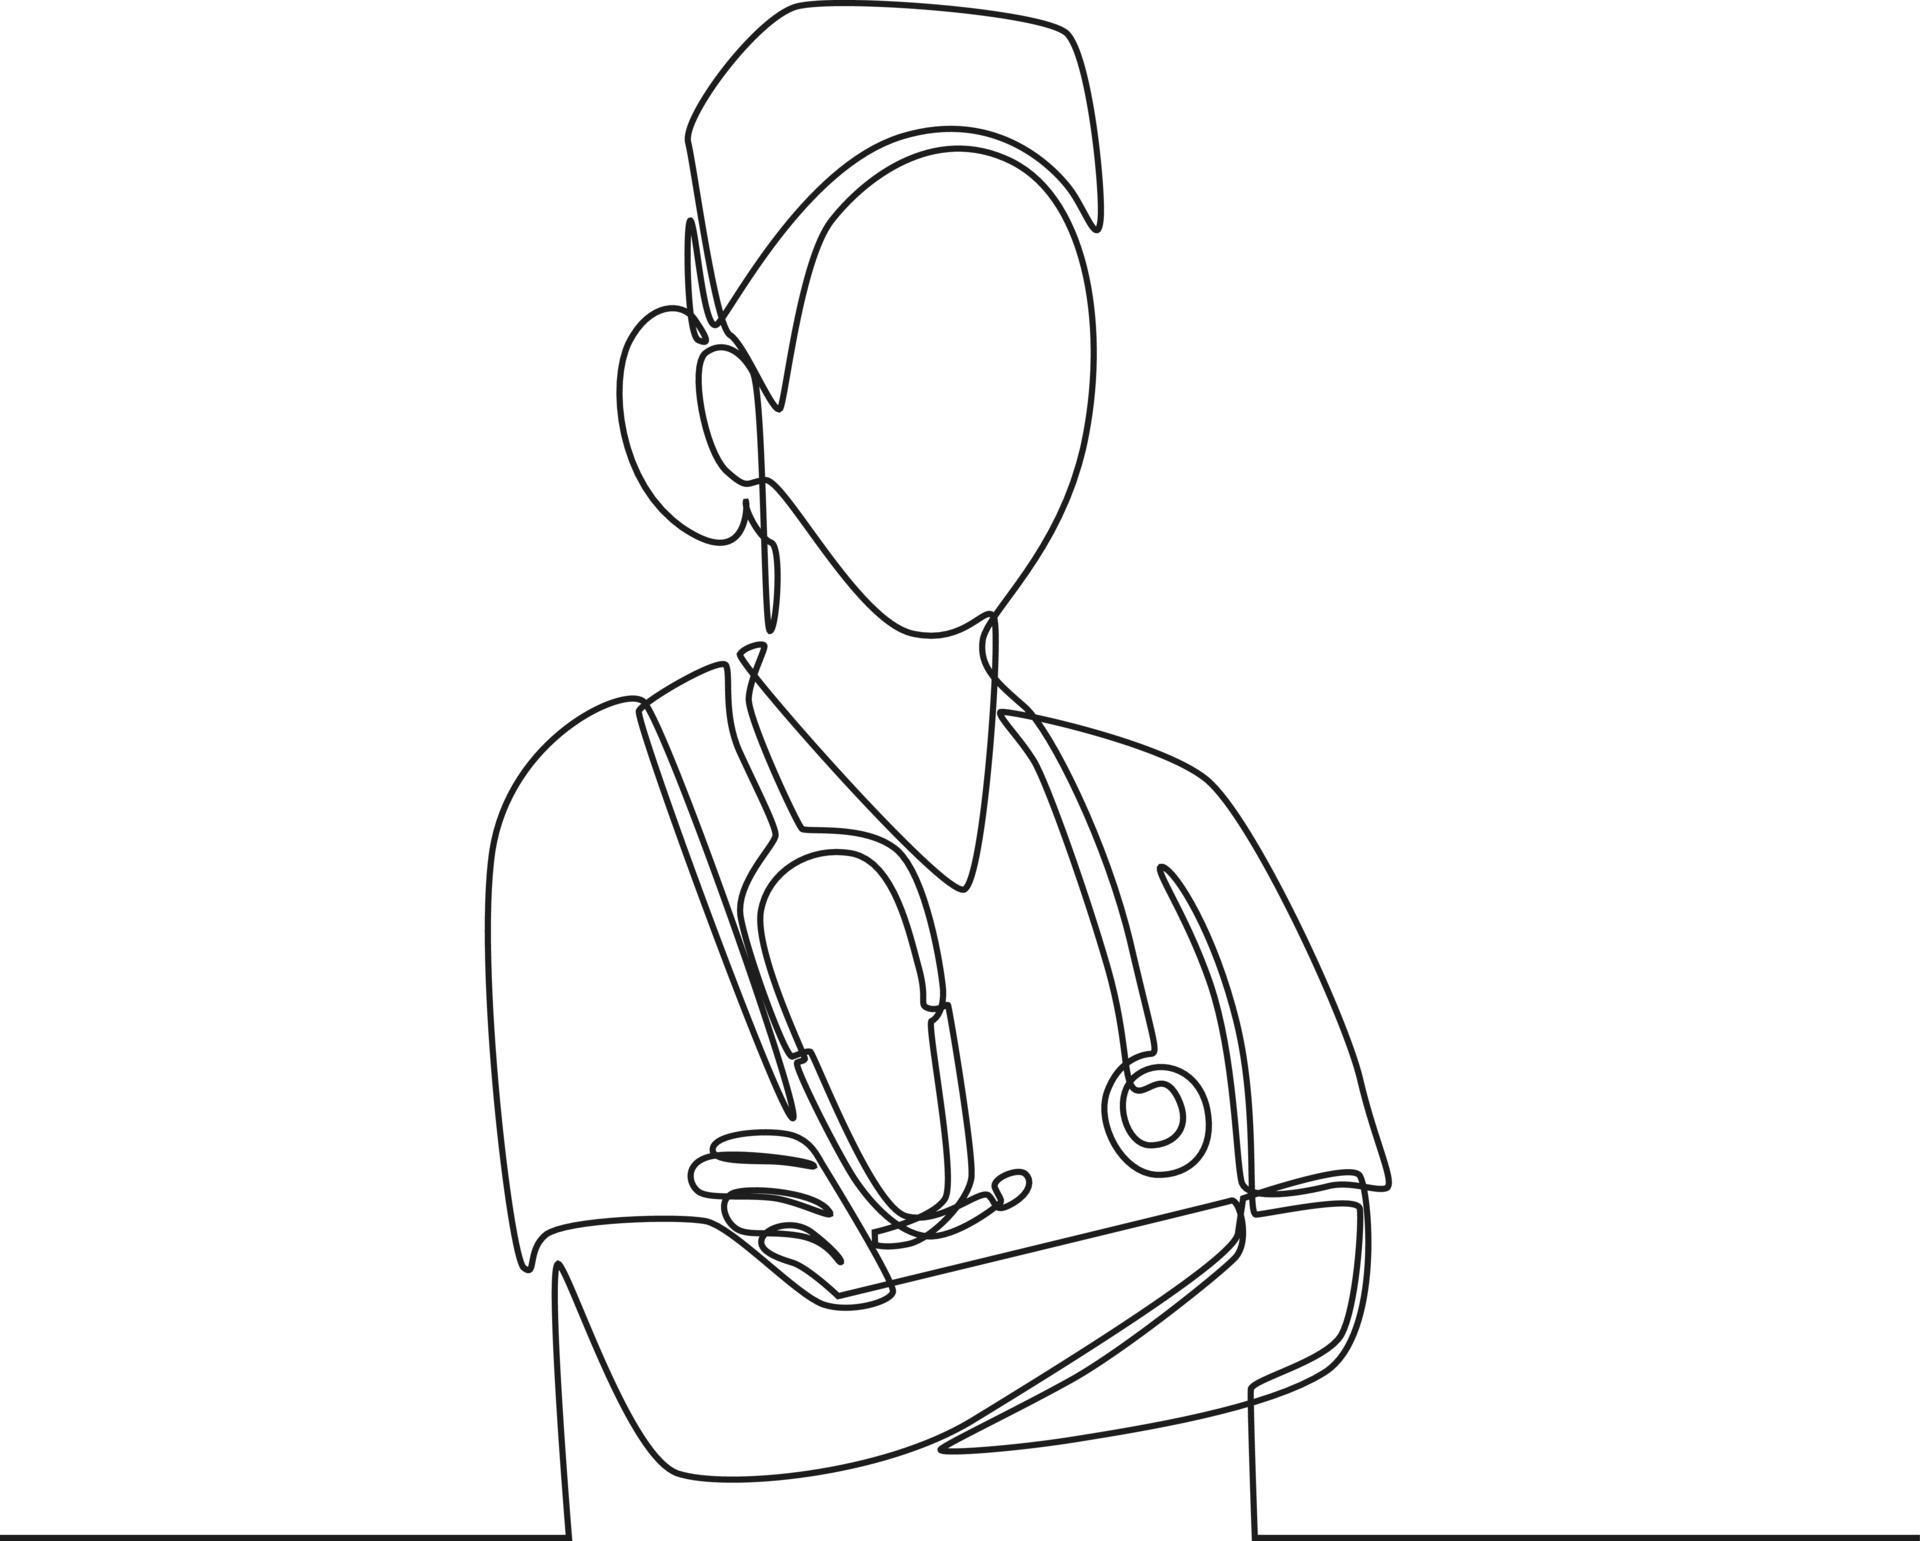 desenho de doutora e enfermeira fazendo consulta com paciente